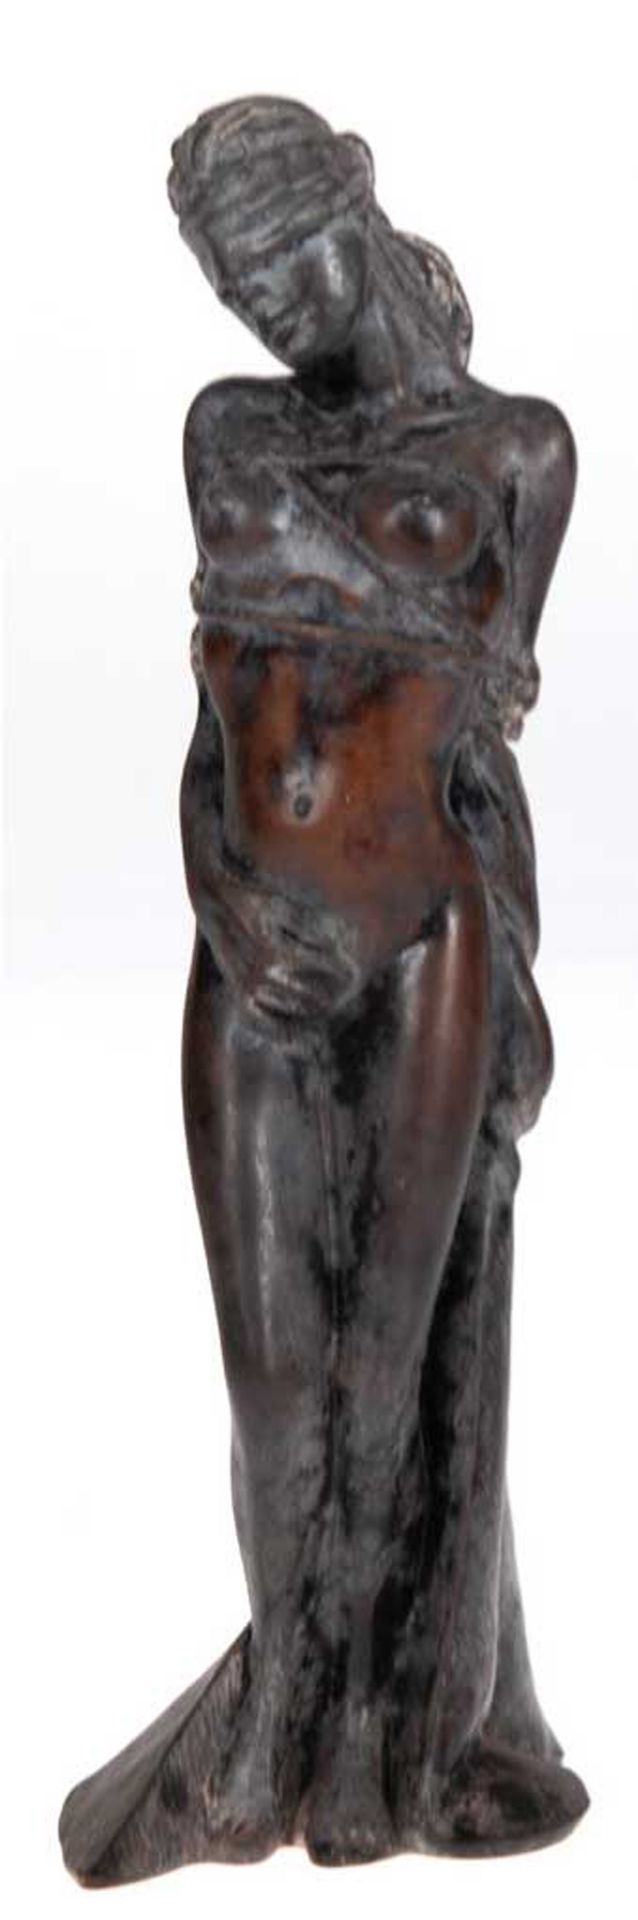 Holz-Figur "Junge Frau mit Augenbinde und Fesseln", geschnitzt, signiert "A. Vachaudez", H. 25 cm